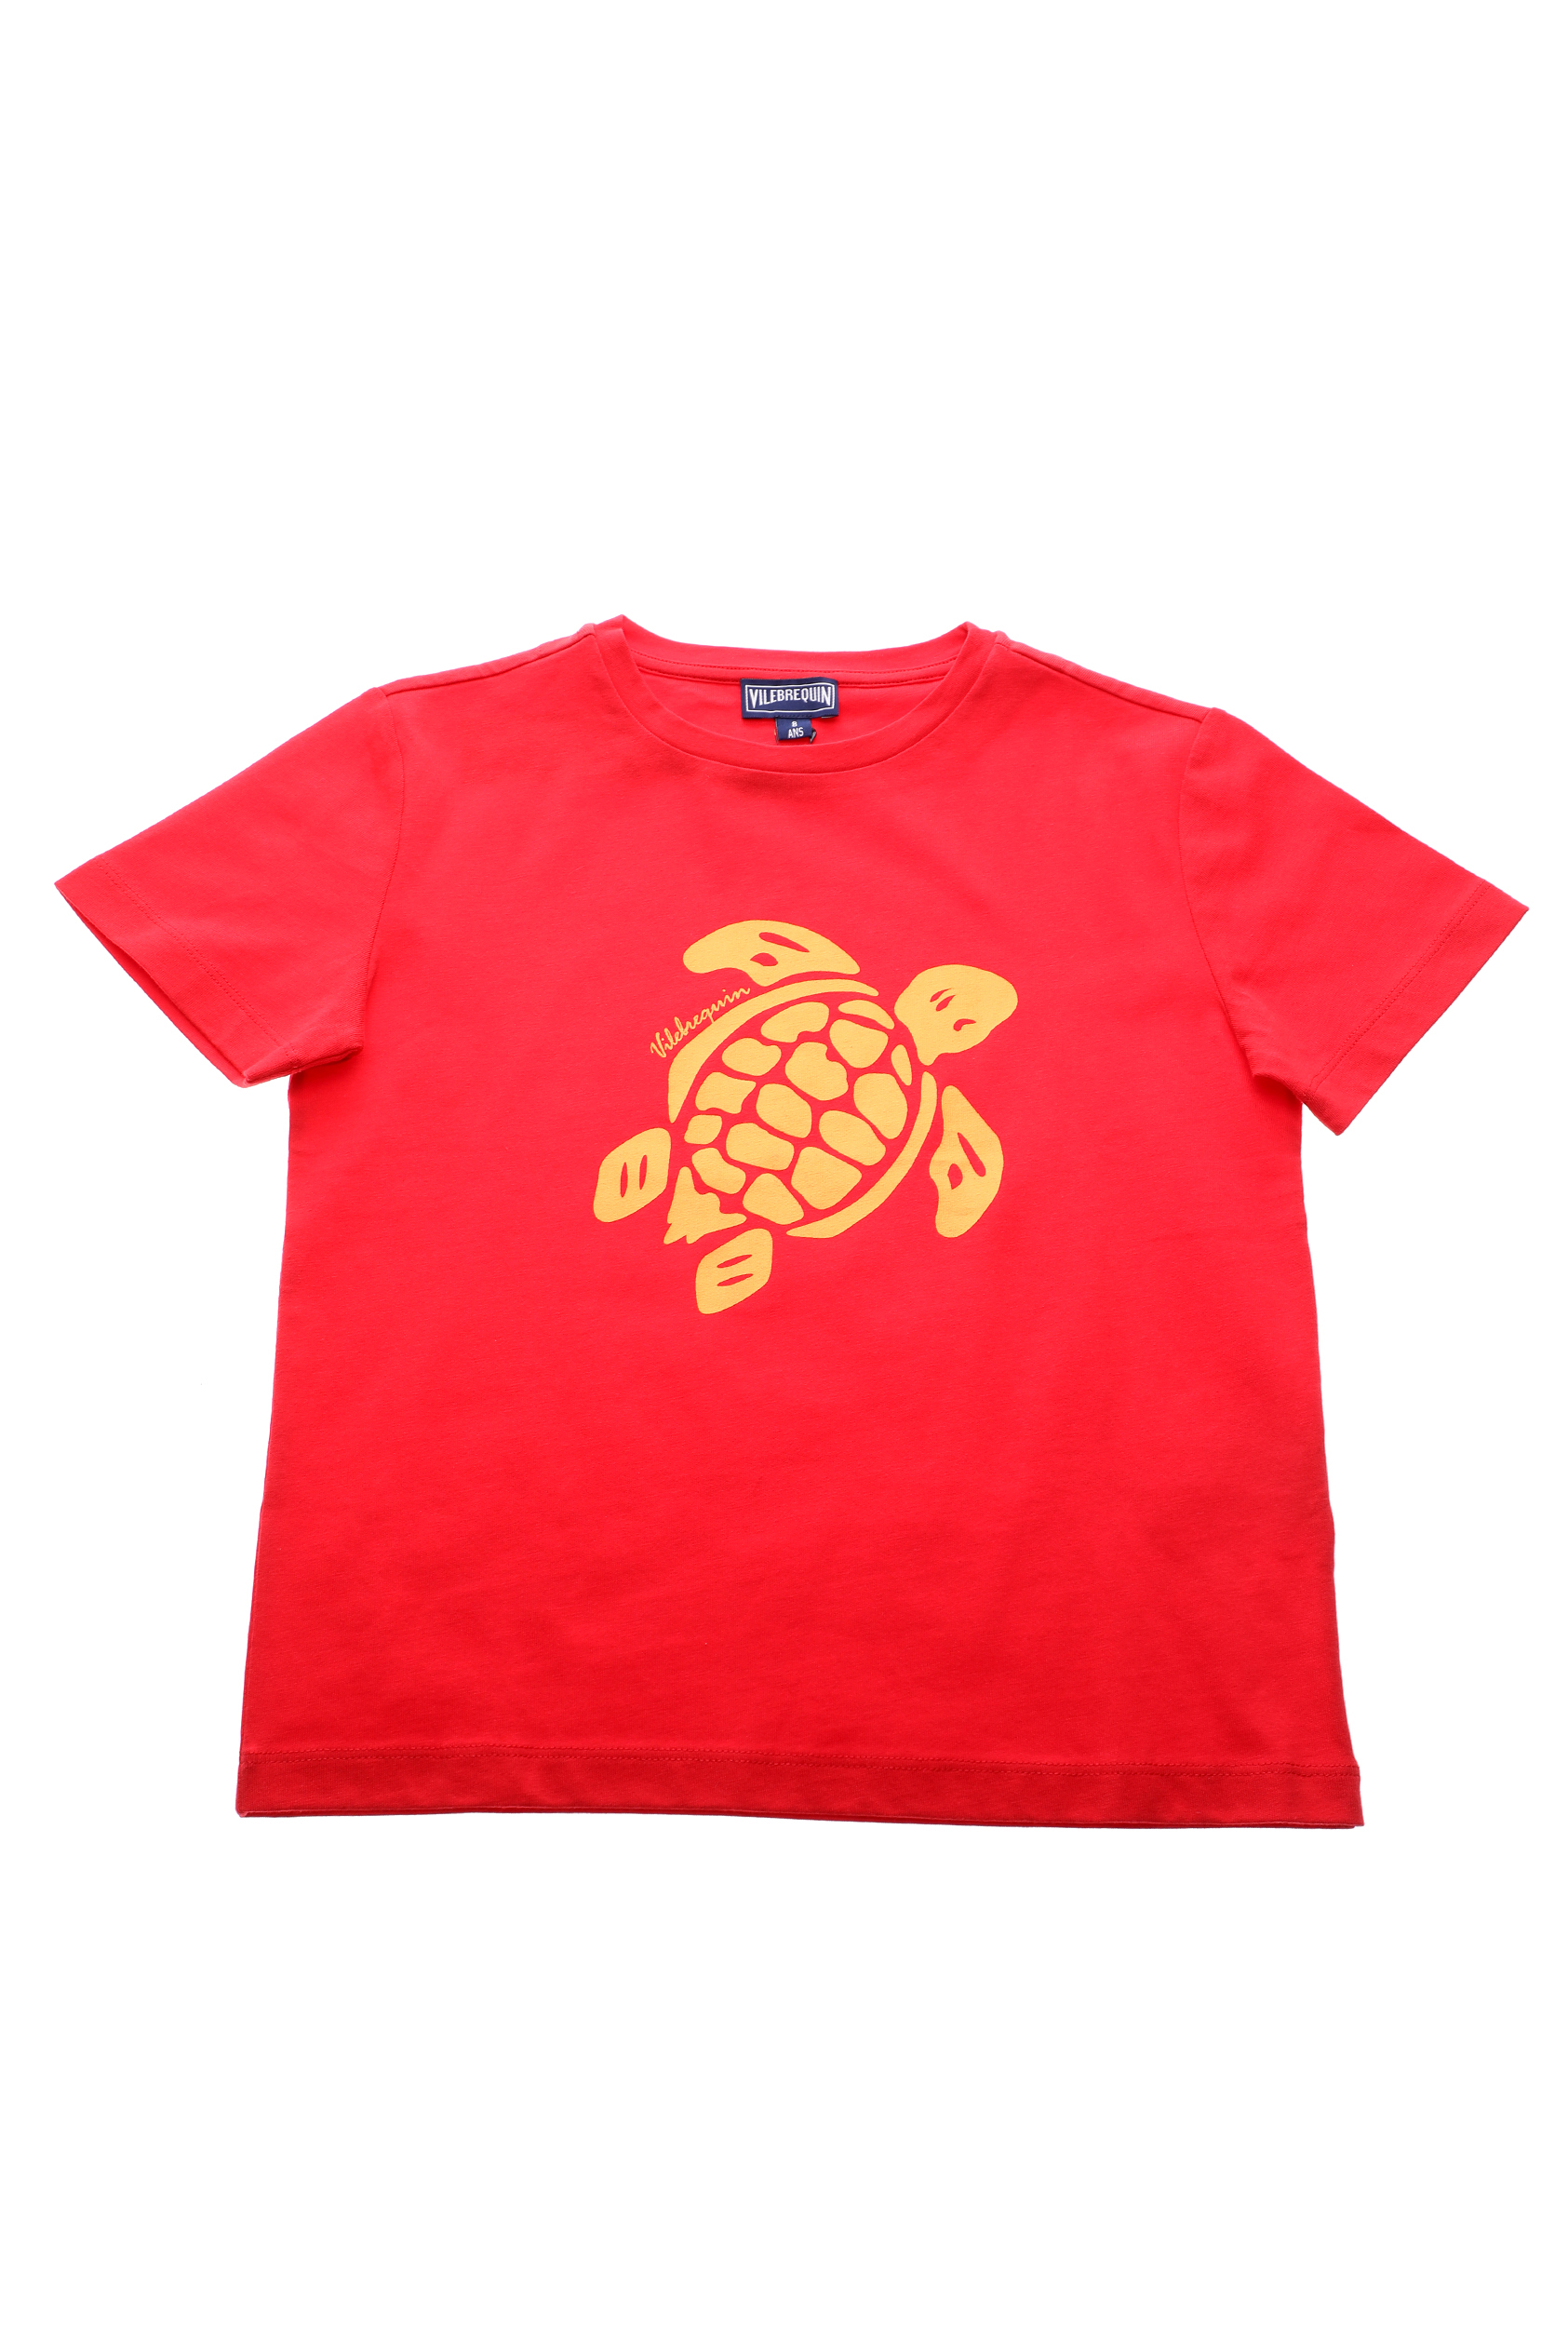 VILEBREQUIN – Παιδικό t-shirt VILEBREQUIN TANGON κόκκινο 1677352.0-0845